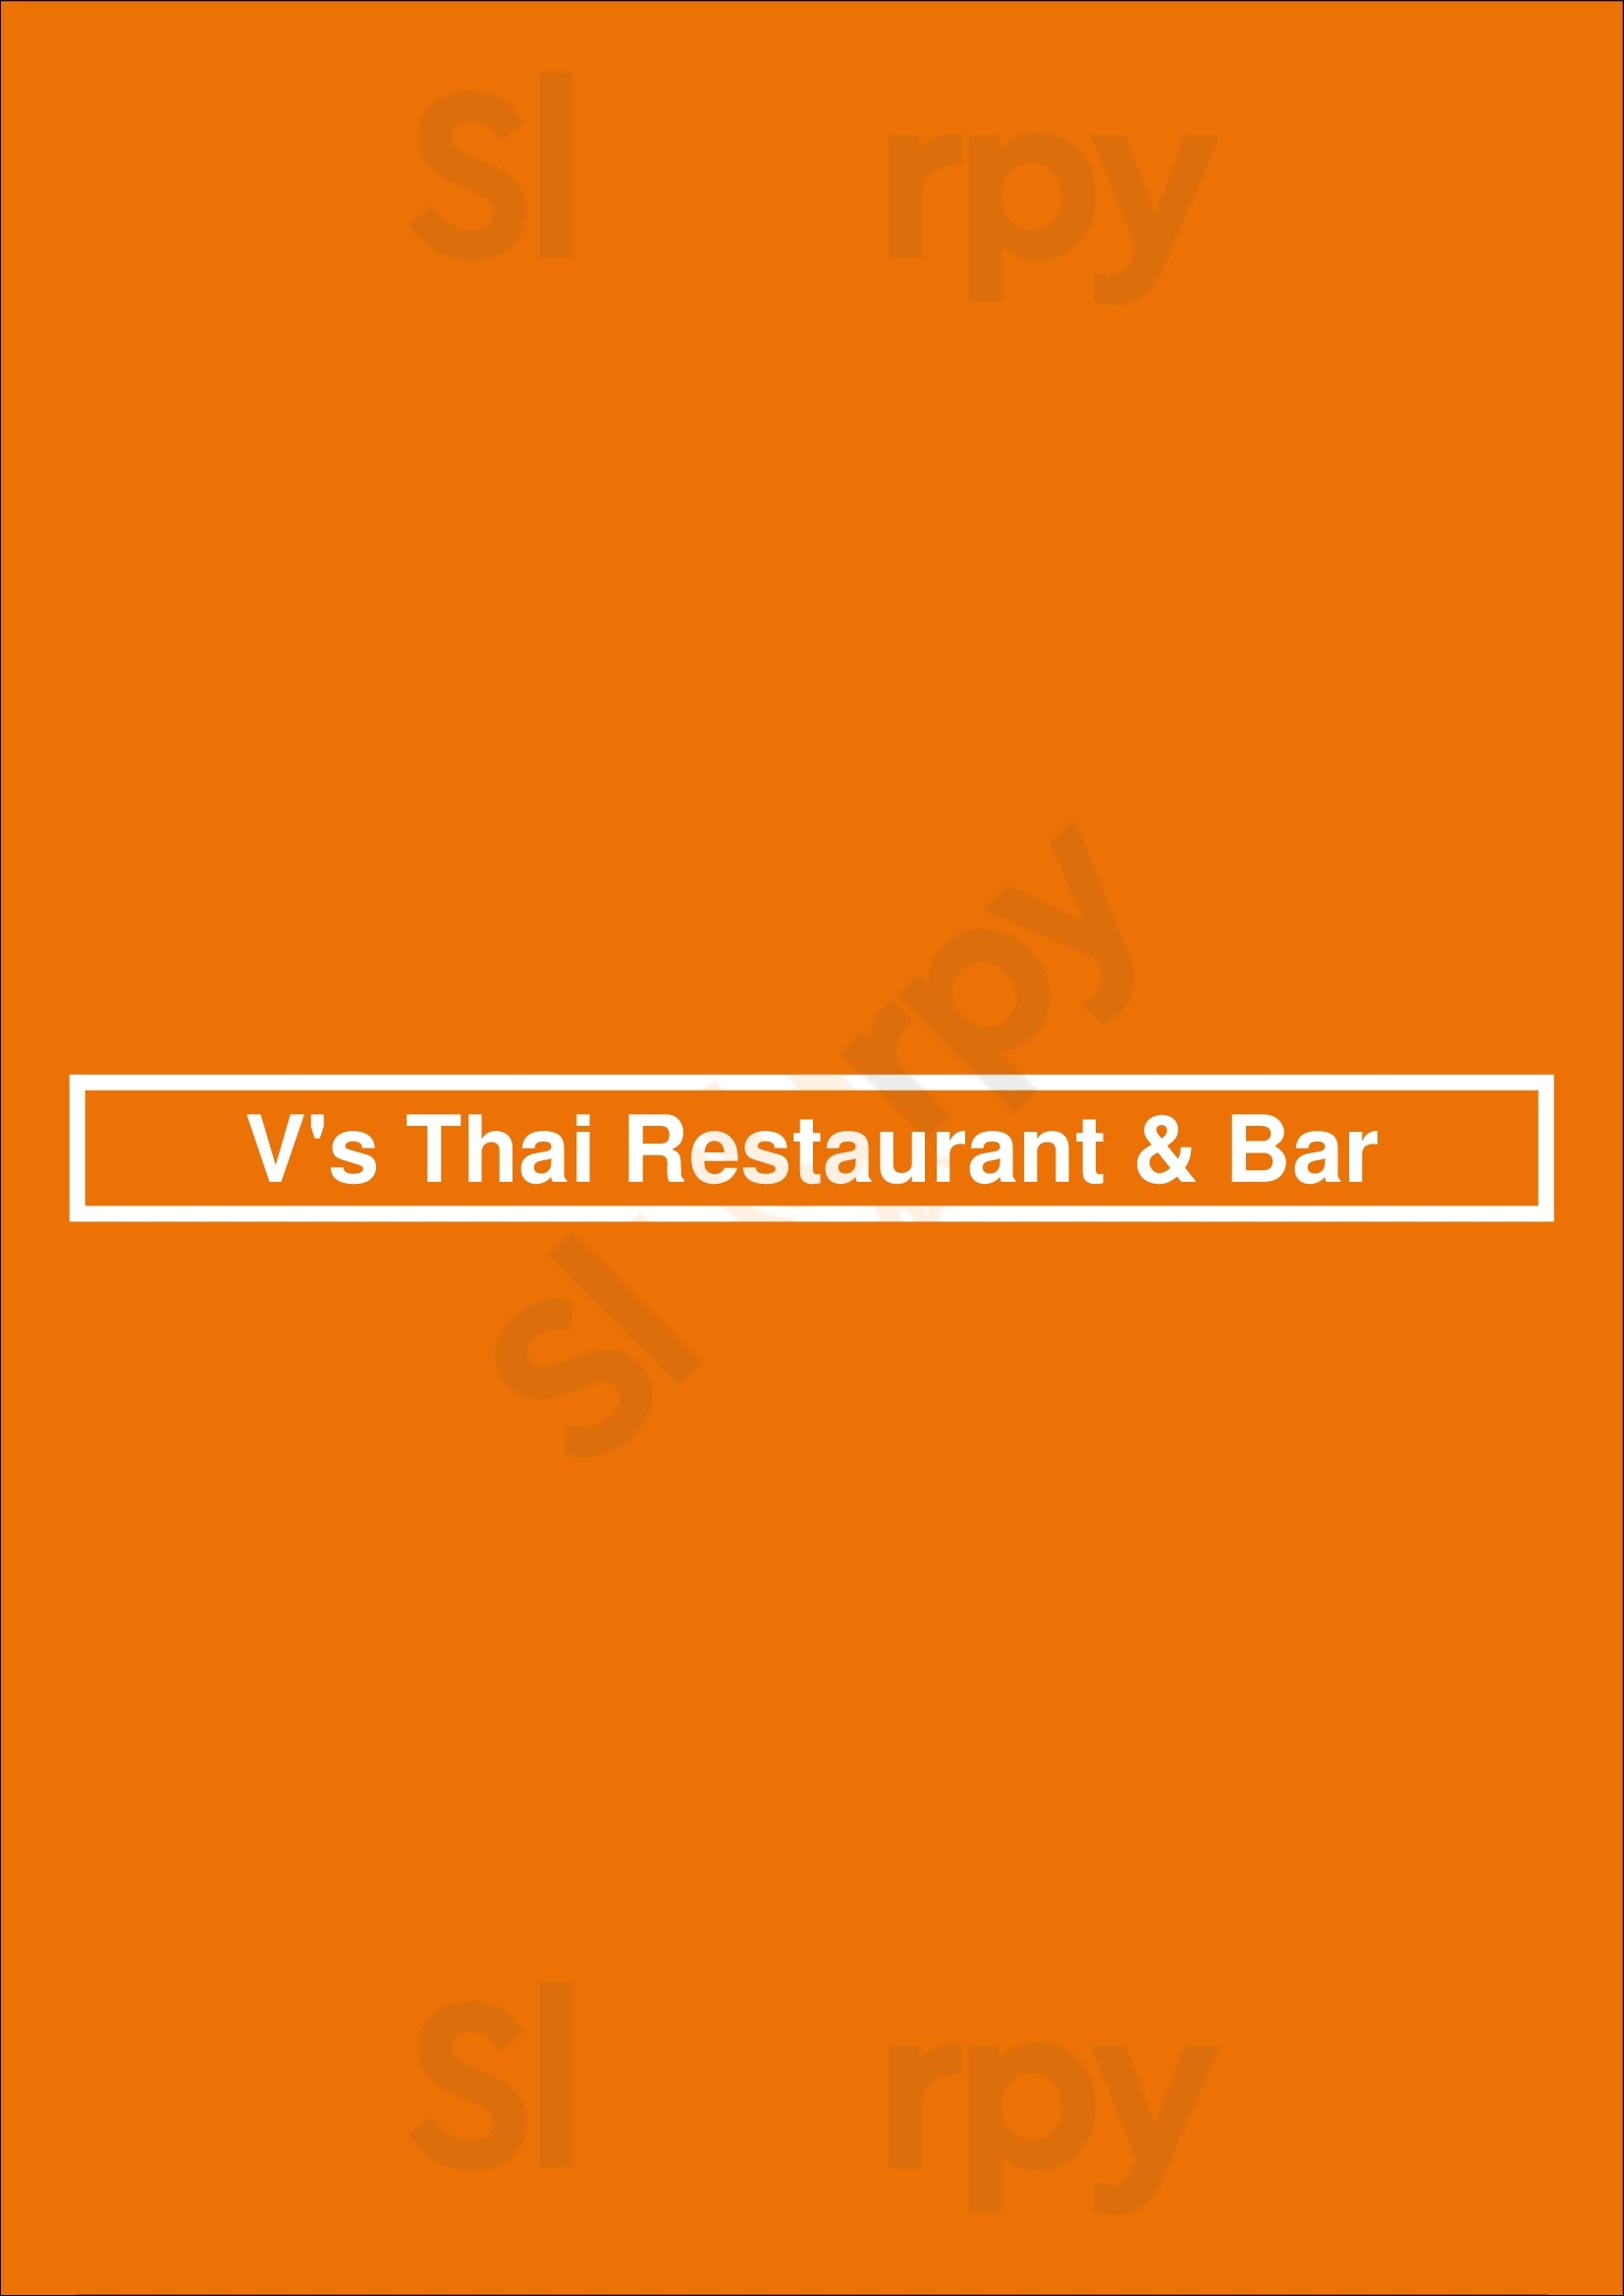 V's Thai Restaurant & Bar Houston Menu - 1